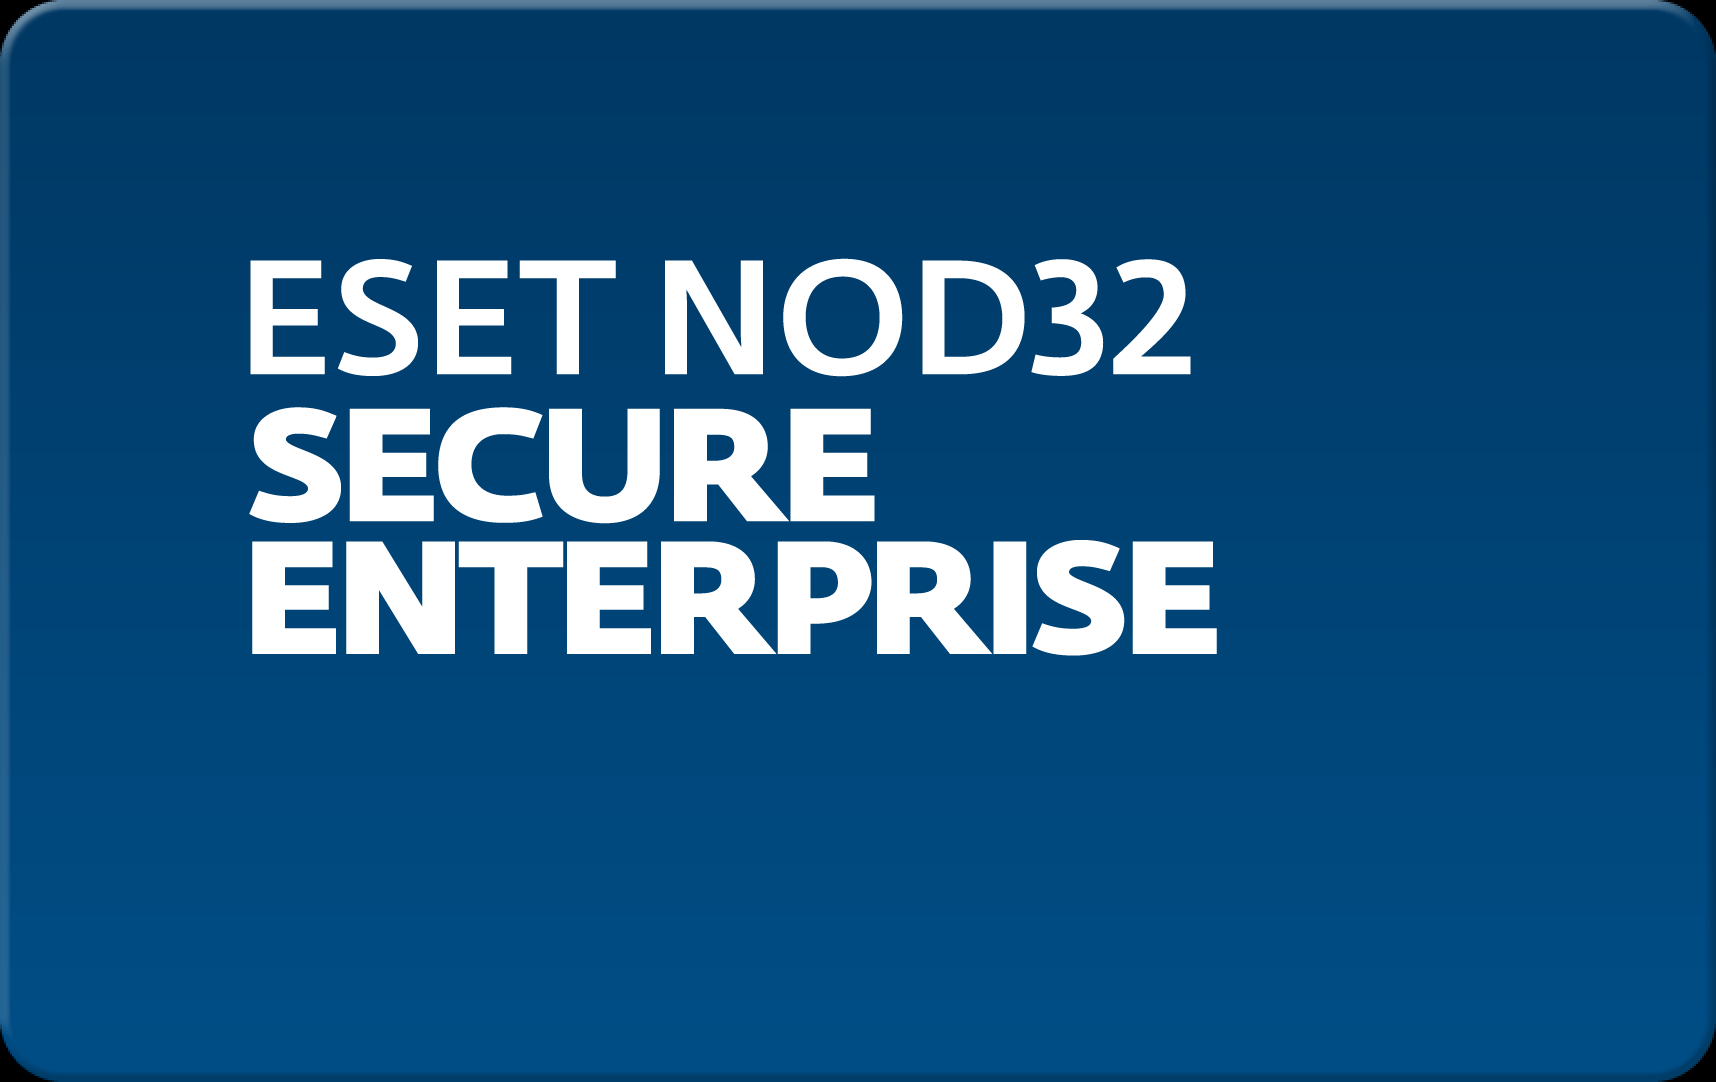        Eset NOD32 Secure Enterprise  147 